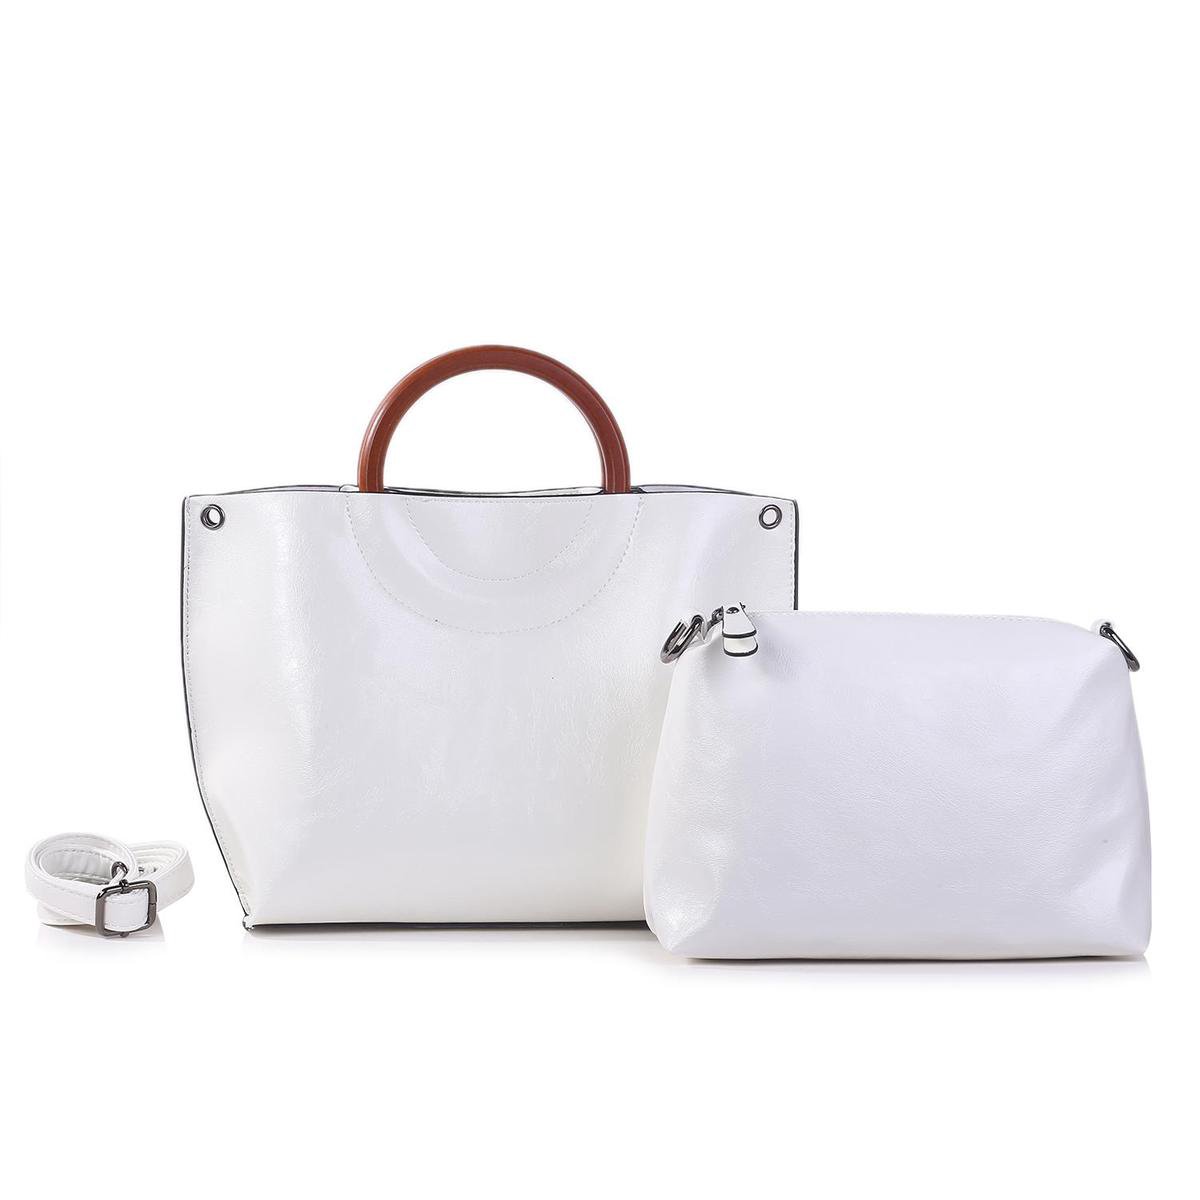 Trendy Handtas Ines Delaure - bag in bag - 2 handtassen - wit